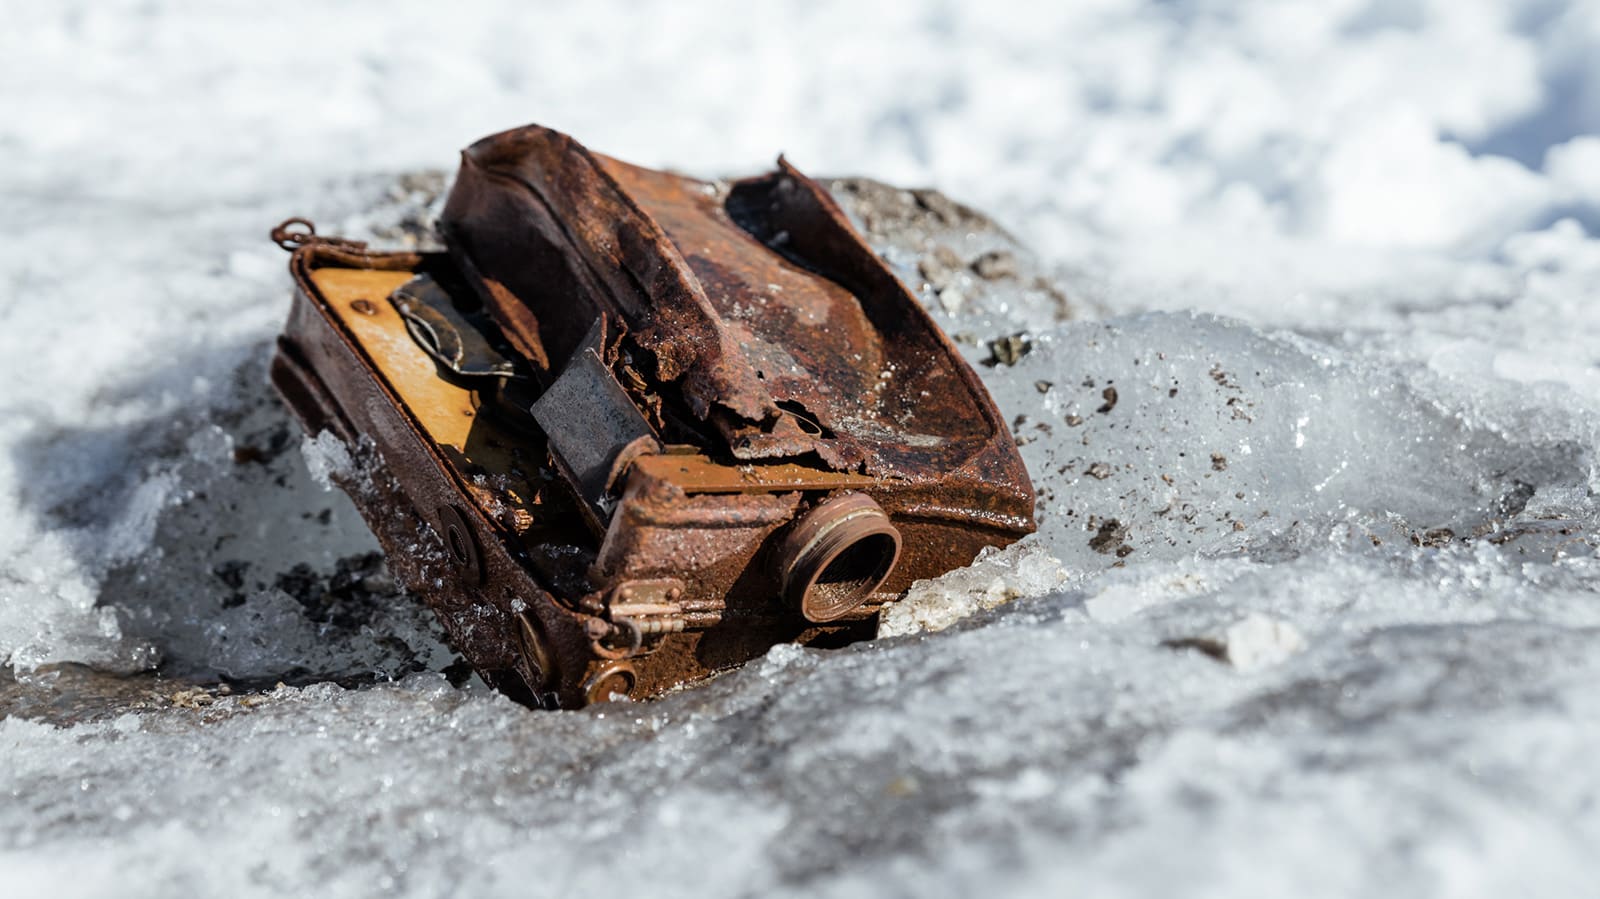 بعد 85 عامًا..العثور على كاميرات مستكشف مهجورة على كتلة جليدية بكندا